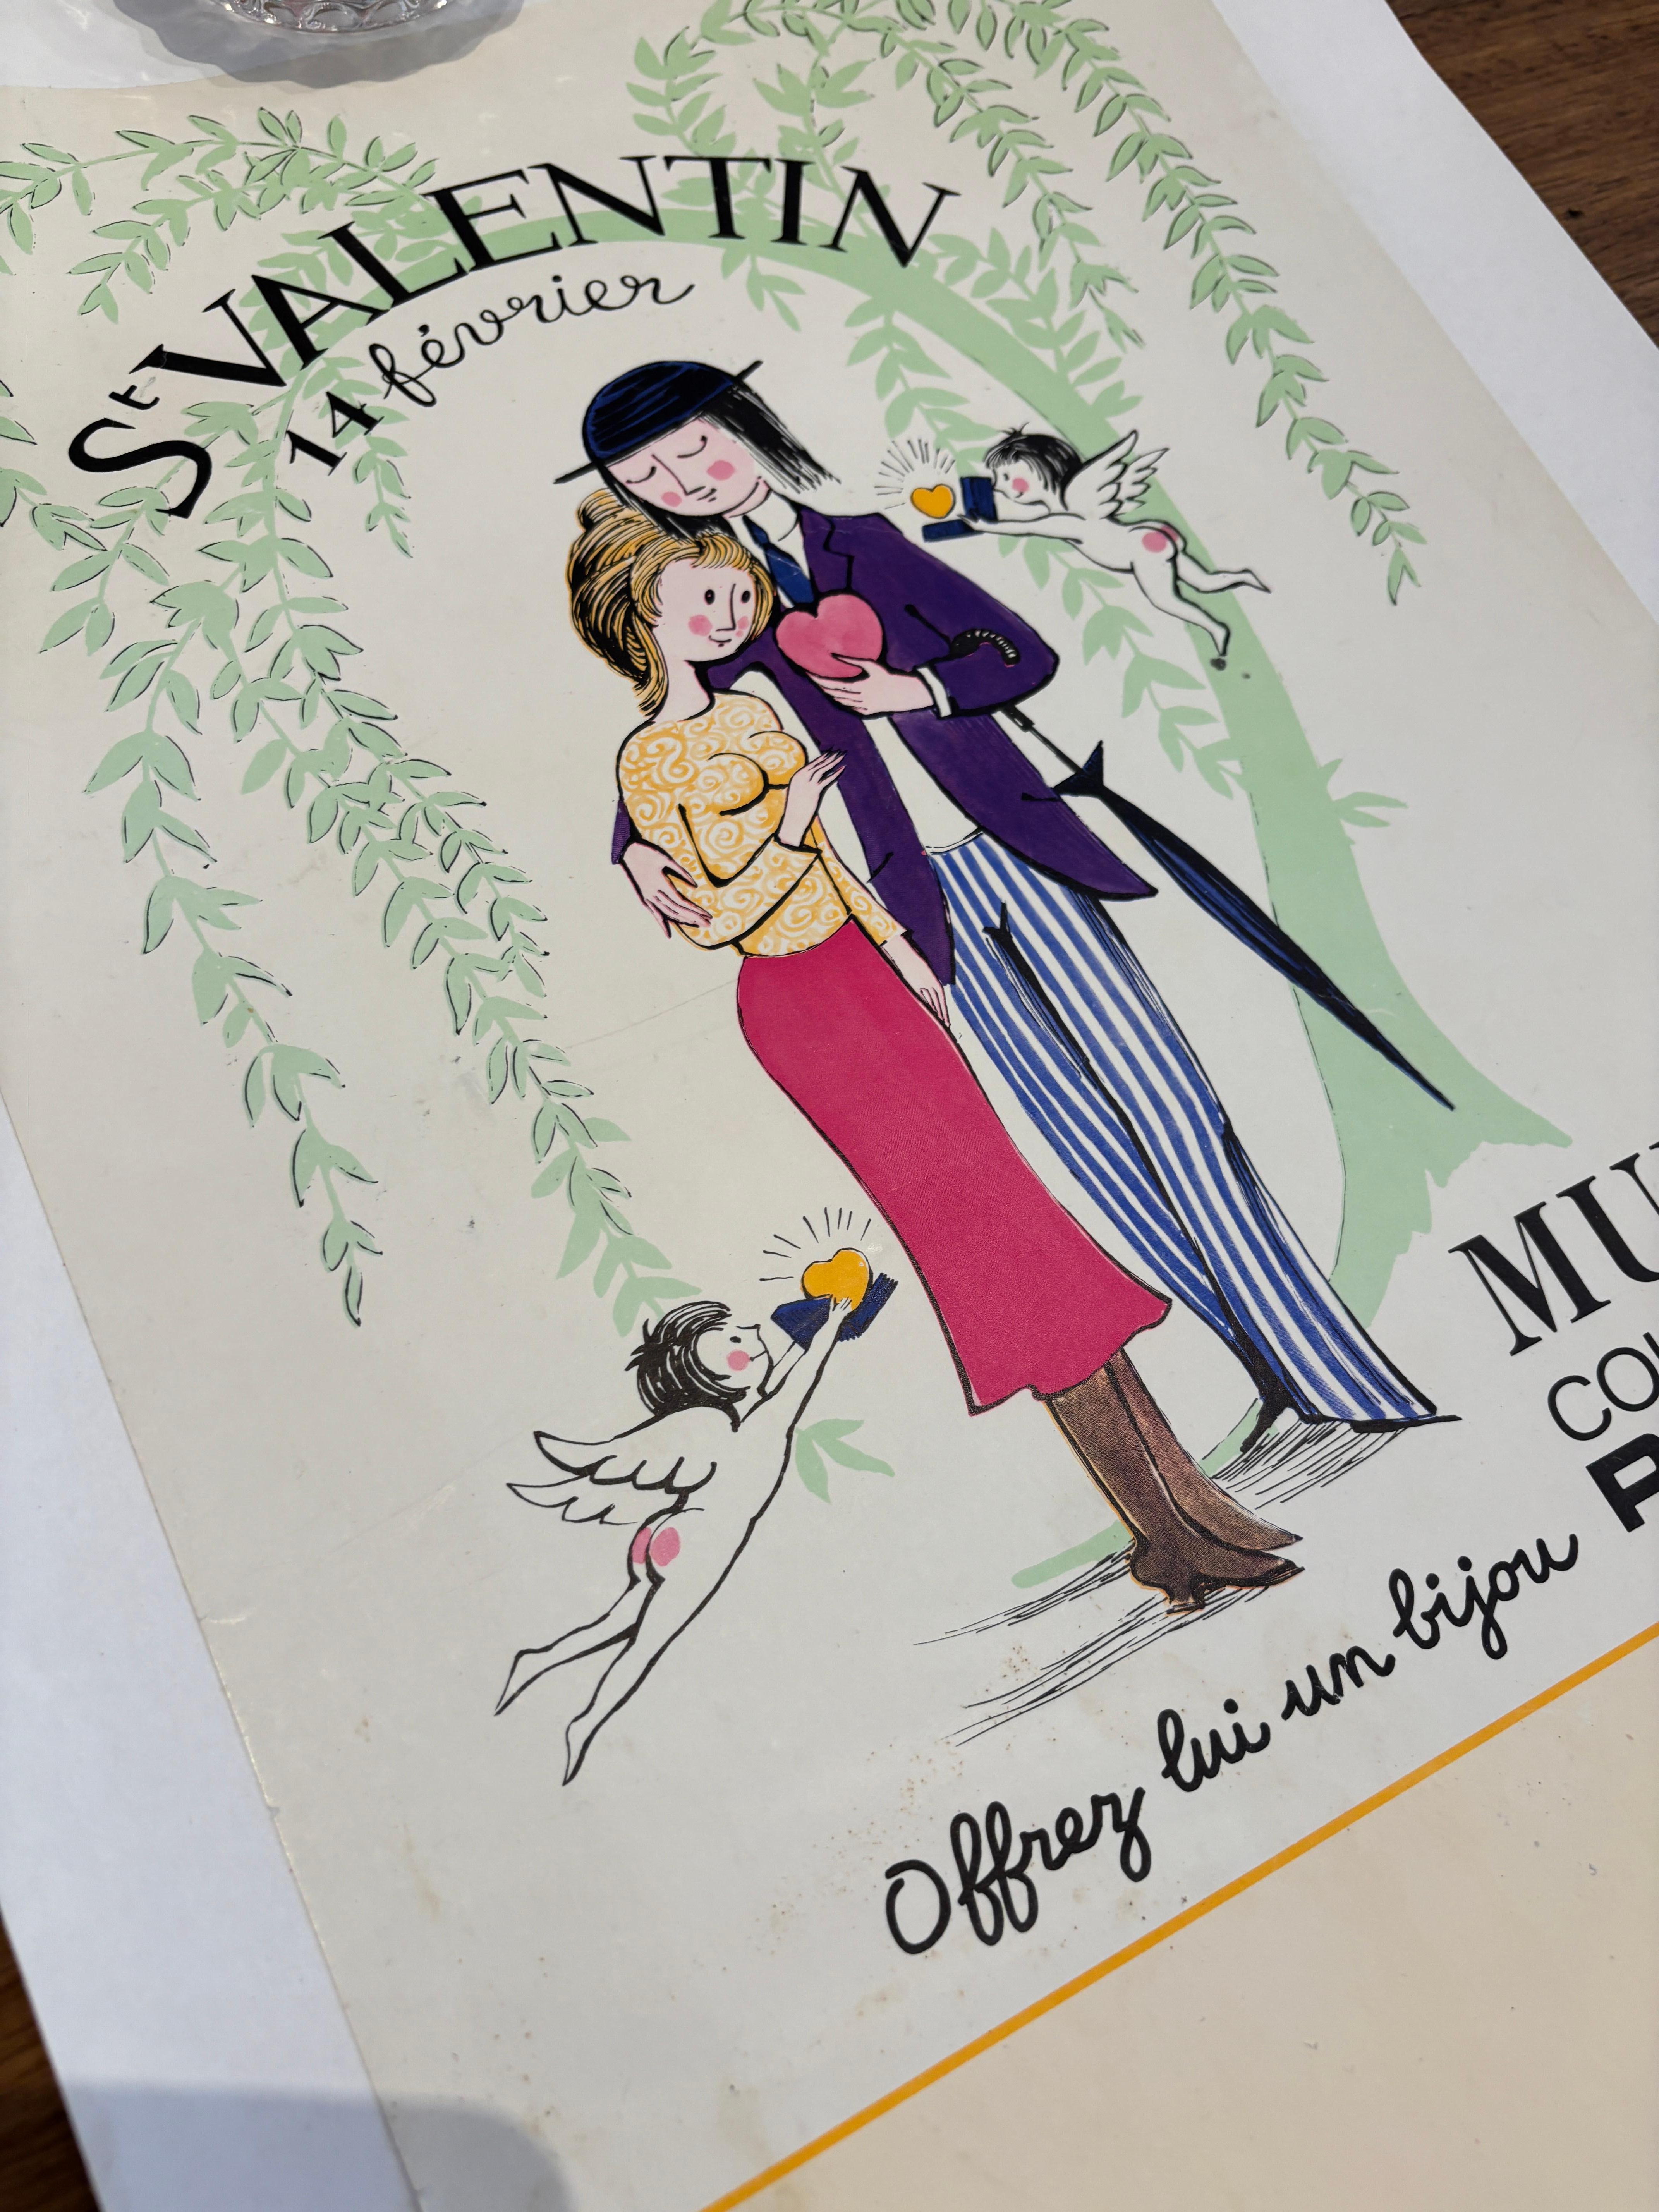 Dies ist ein originales Vintage-Plakat des berühmten französischen Illustrationskünstlers Raymond Peynet.

Raymond Peynet (1908-1999) war ein französischer Künstler, der für seine romantischen und sentimentalen Illustrationen bekannt war. Am